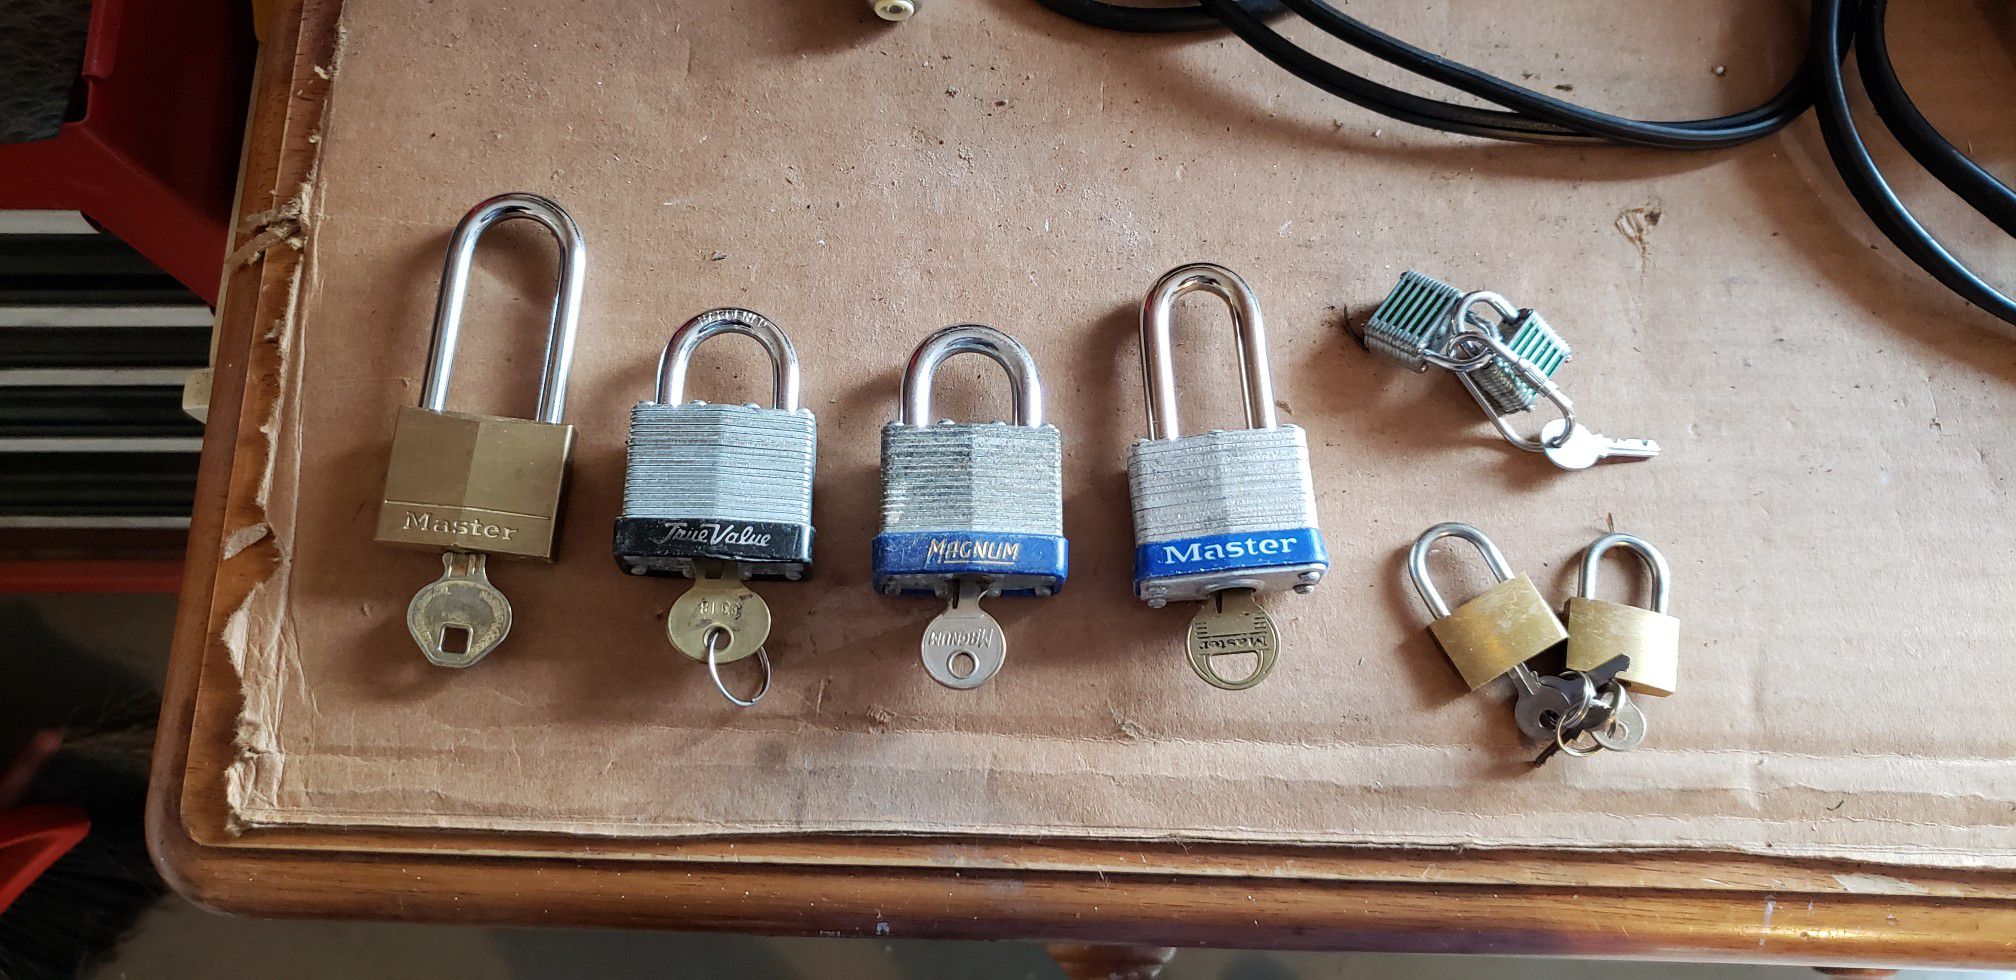 Multiple locks with keys